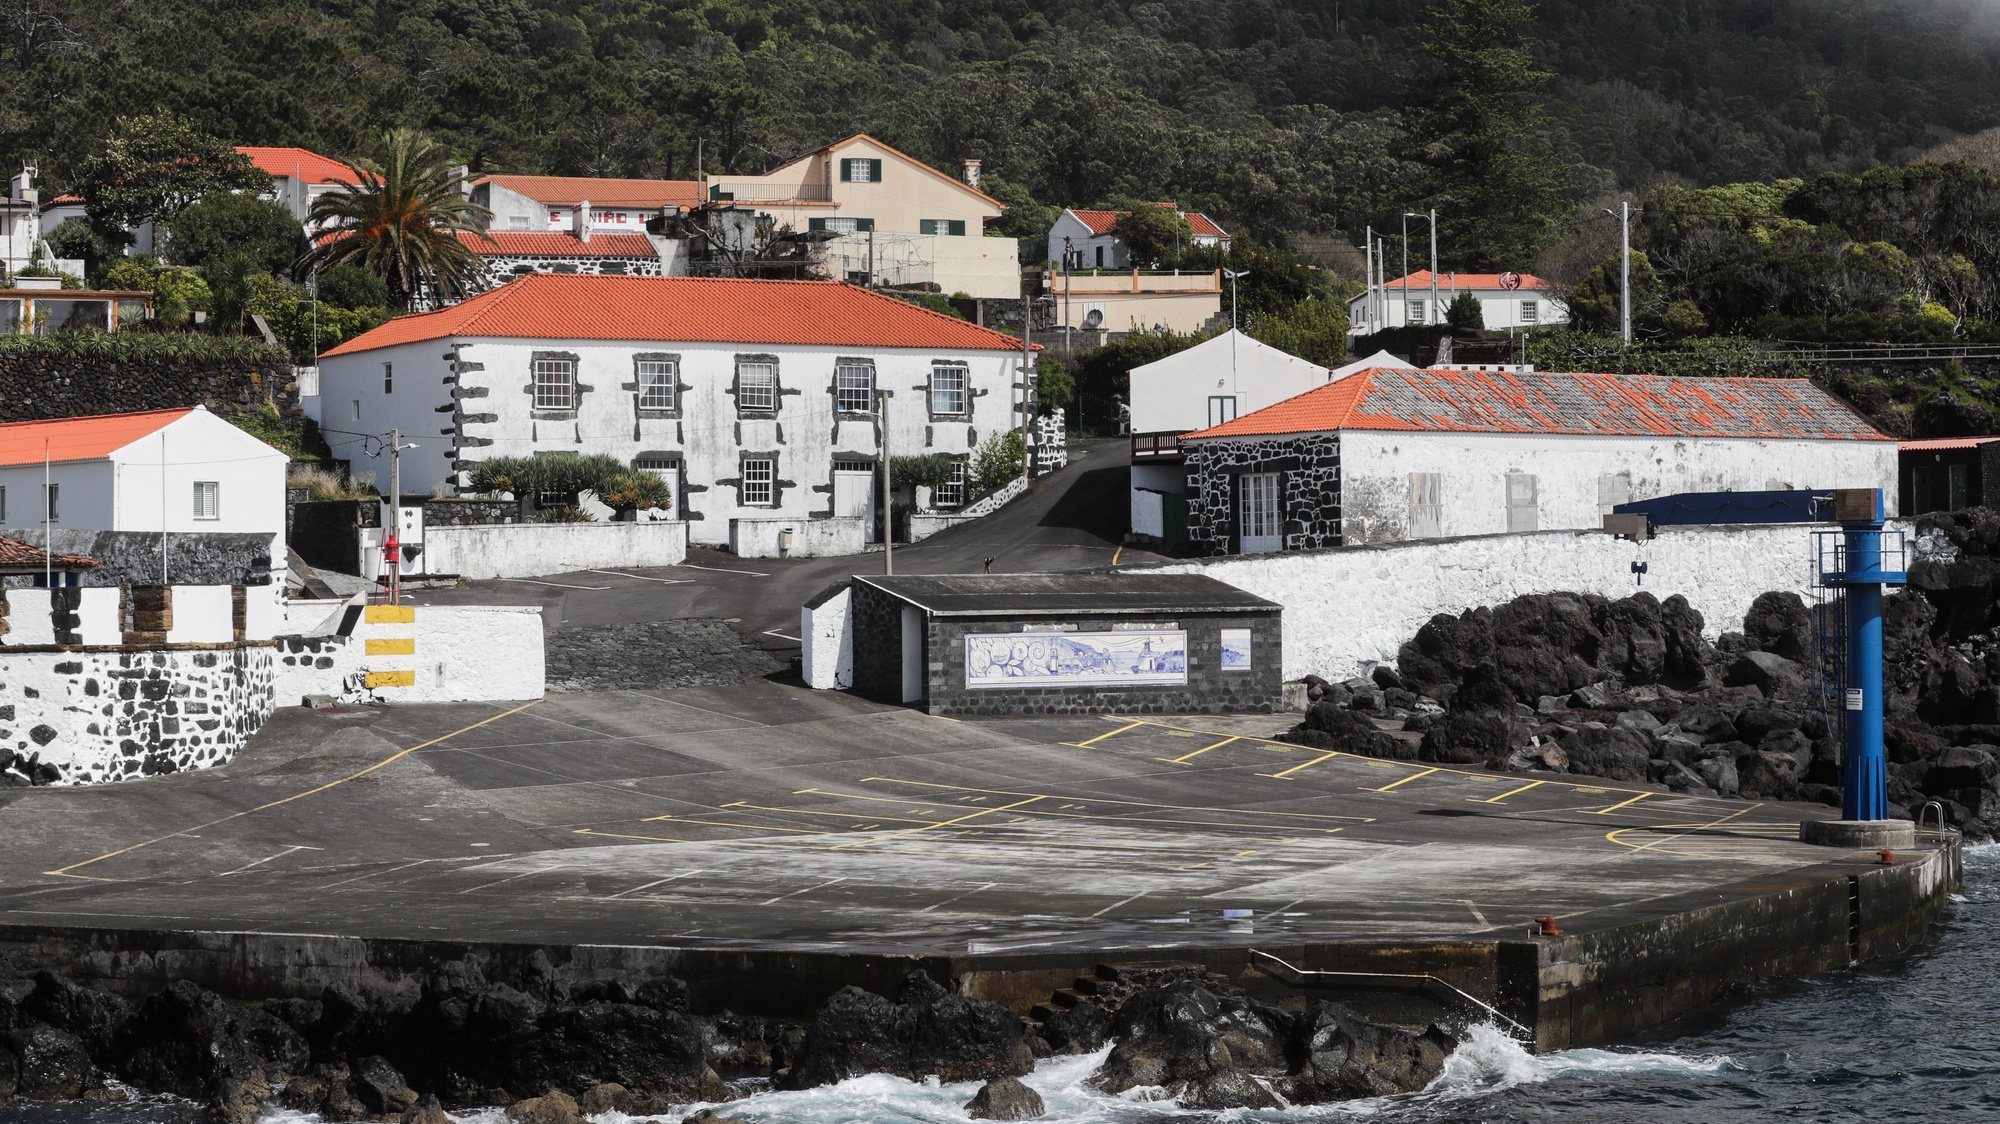 Vista geral de parte do porto da vila de Urzelina na ilha de São Jorge nos Açores, 29 de março de 2022. TIAGO PETINGA/LUSA